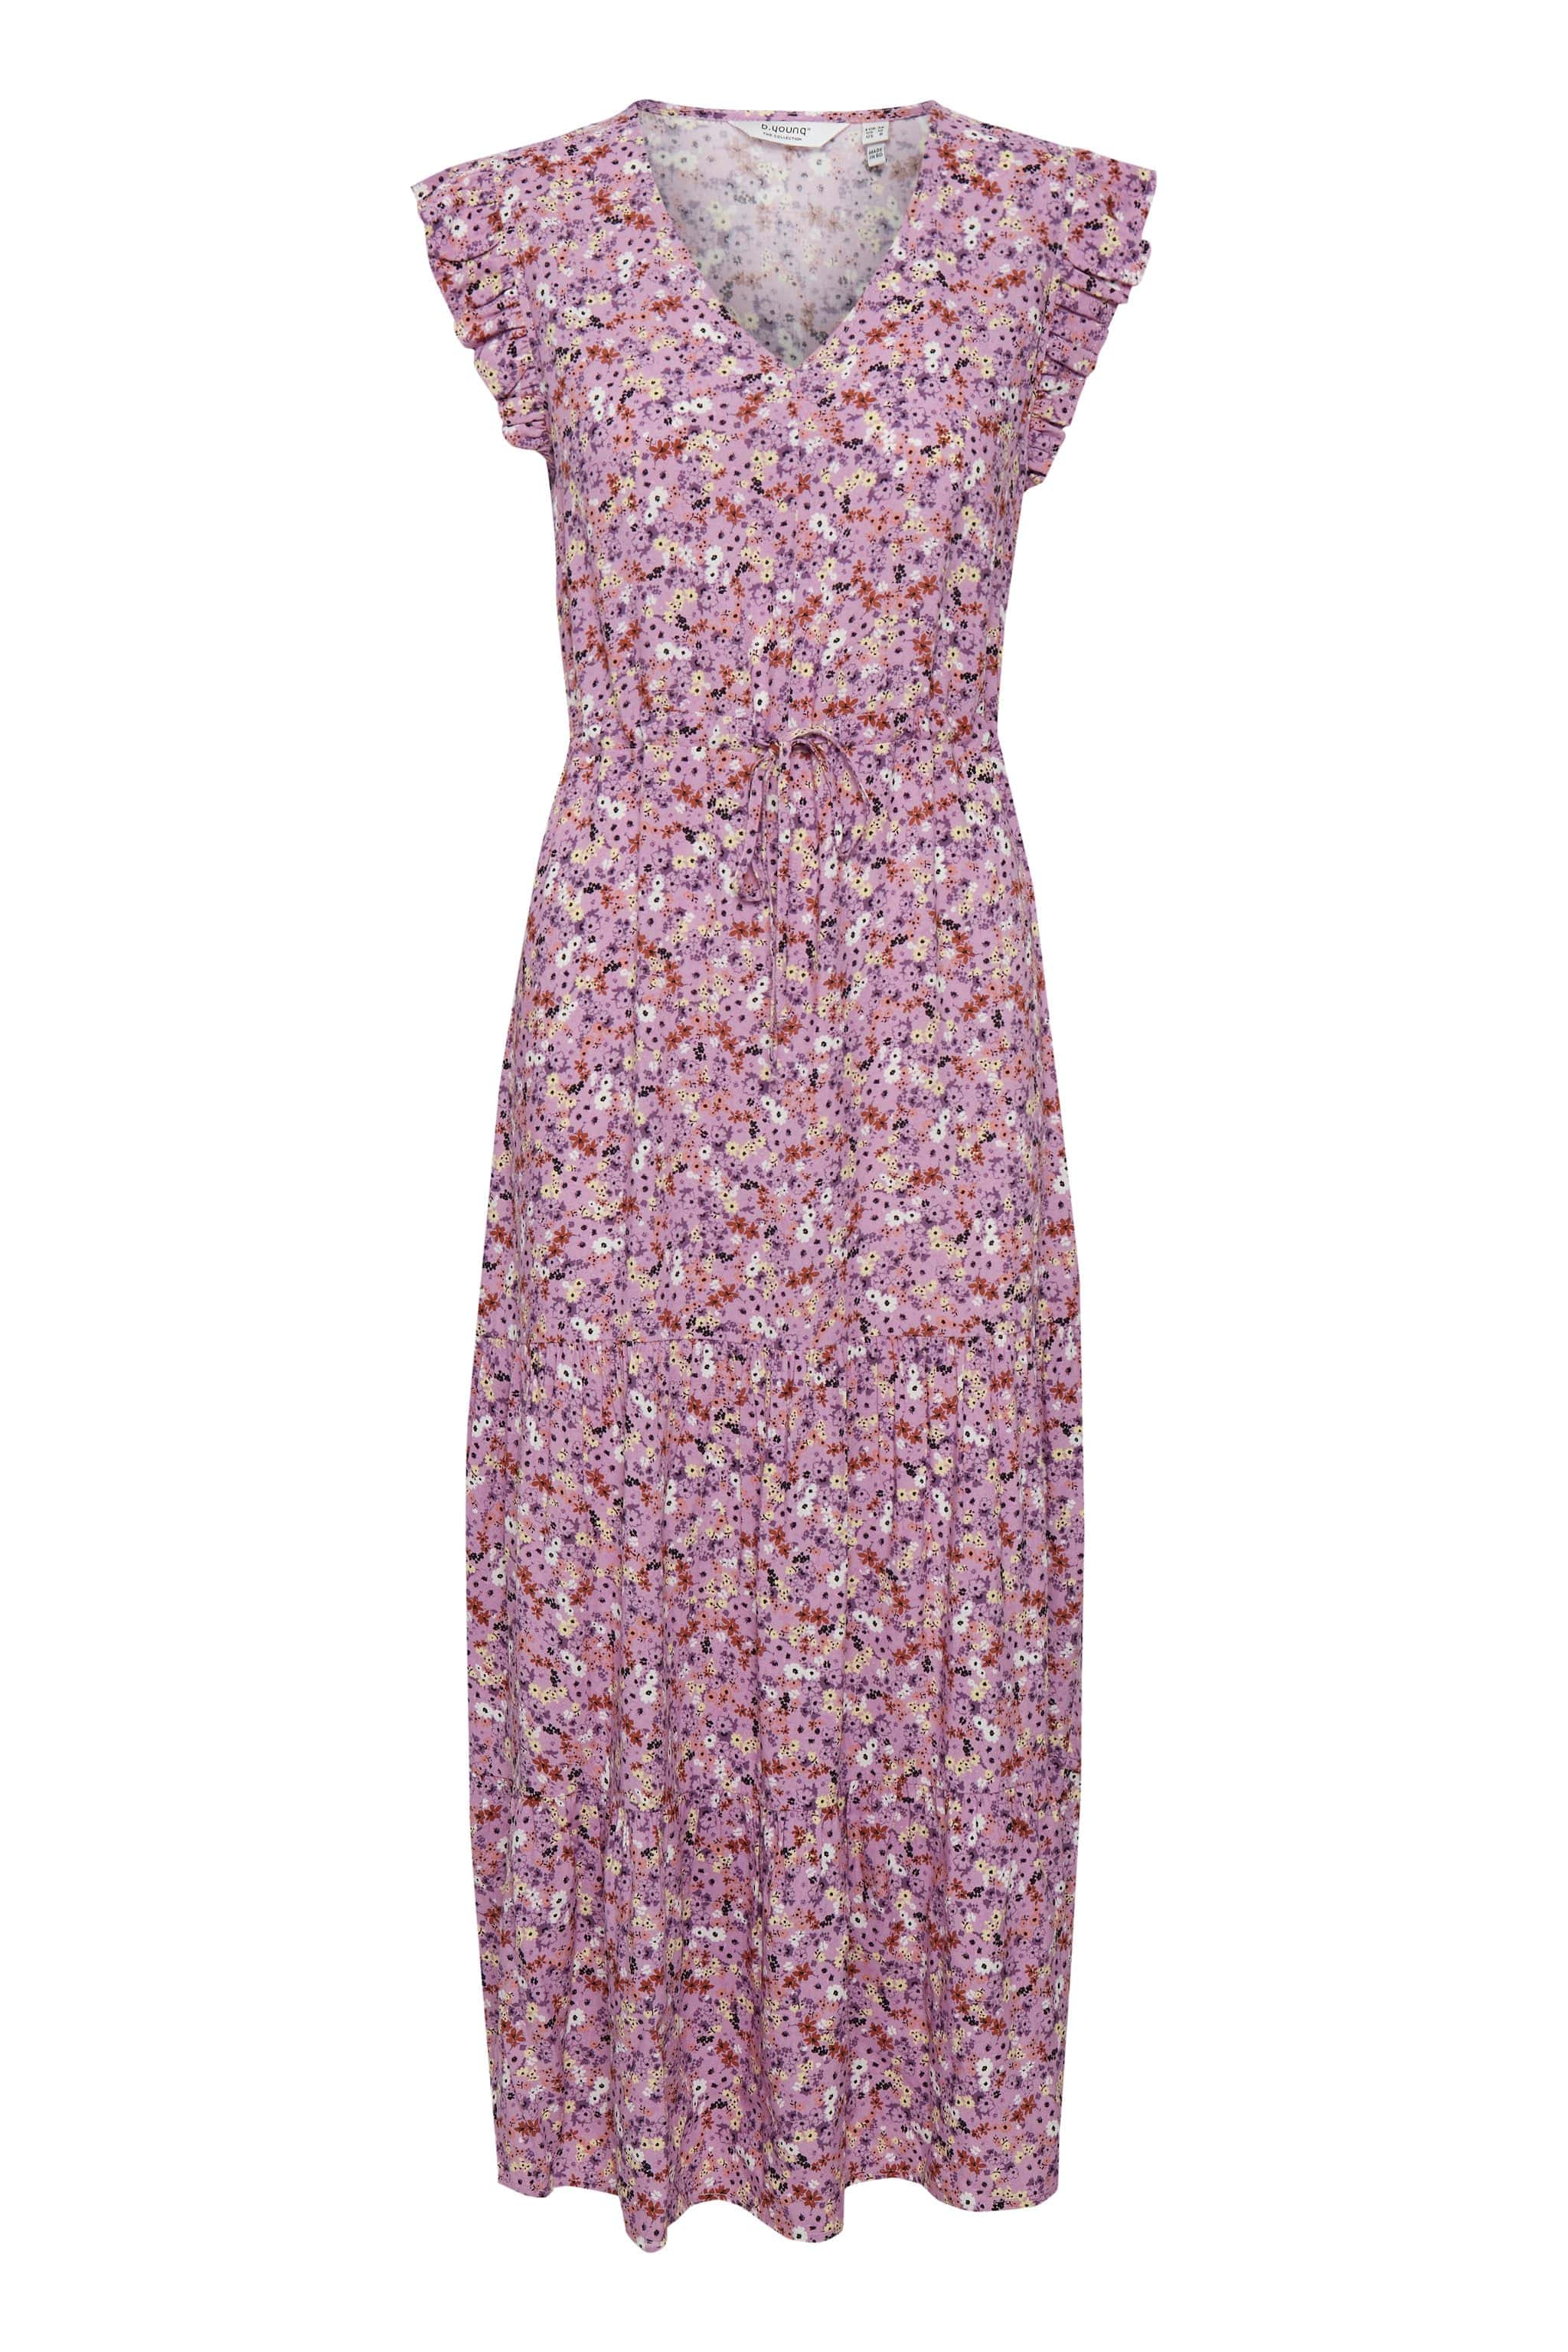 faldskærm Bageri debitor B-Young - Lang kjole, rosa mønster - 20811219-201129